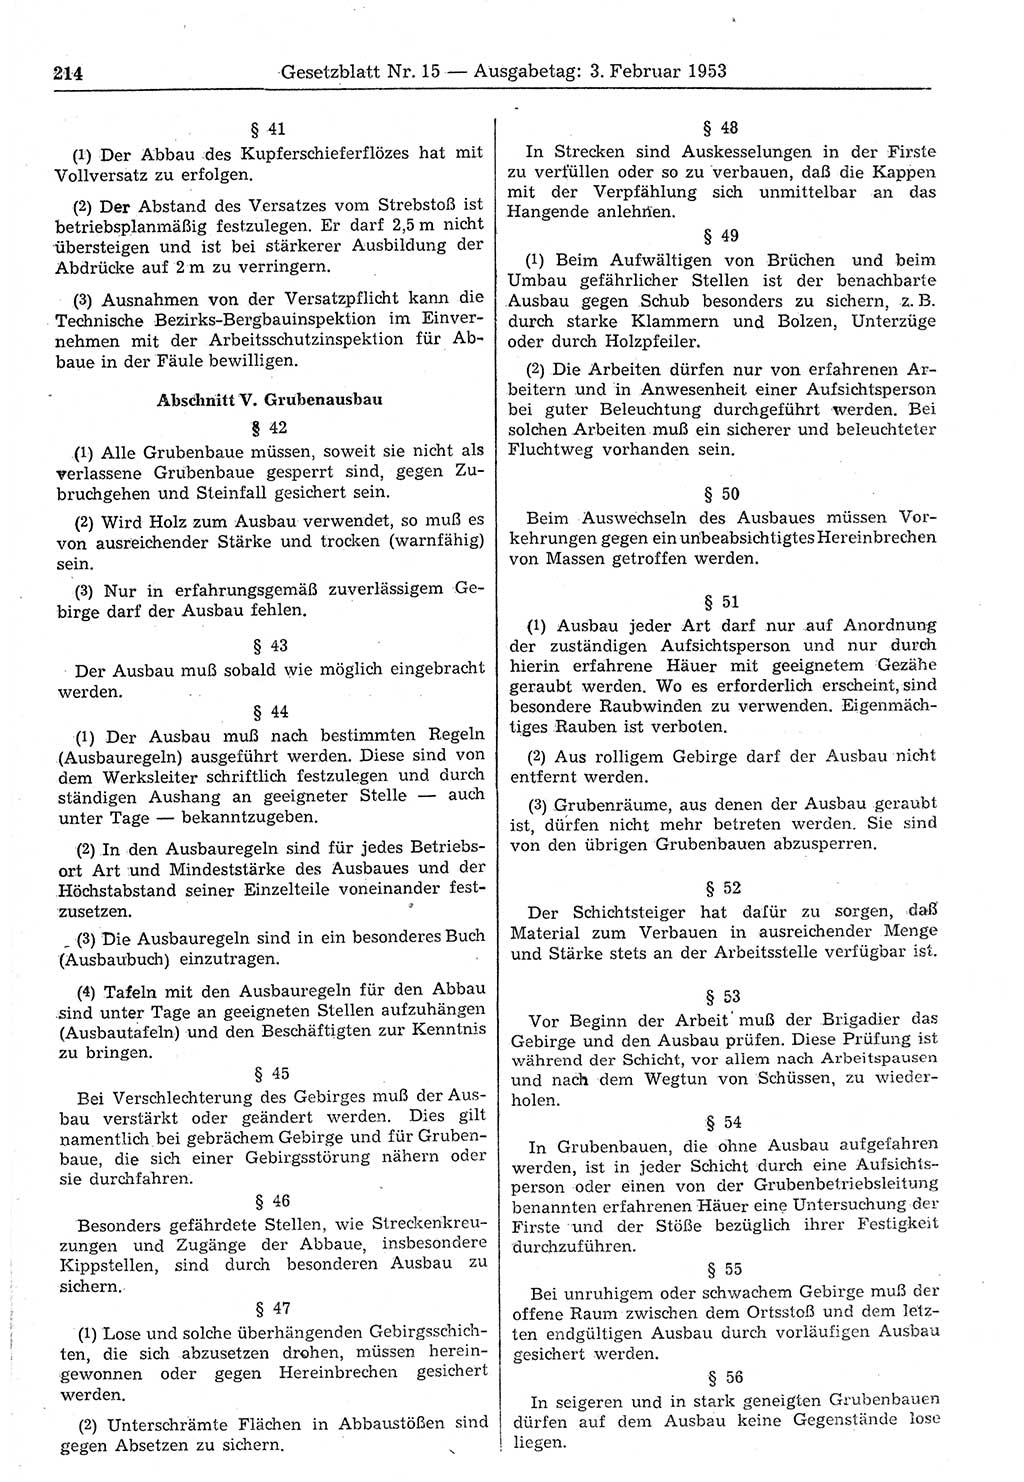 Gesetzblatt (GBl.) der Deutschen Demokratischen Republik (DDR) 1953, Seite 214 (GBl. DDR 1953, S. 214)